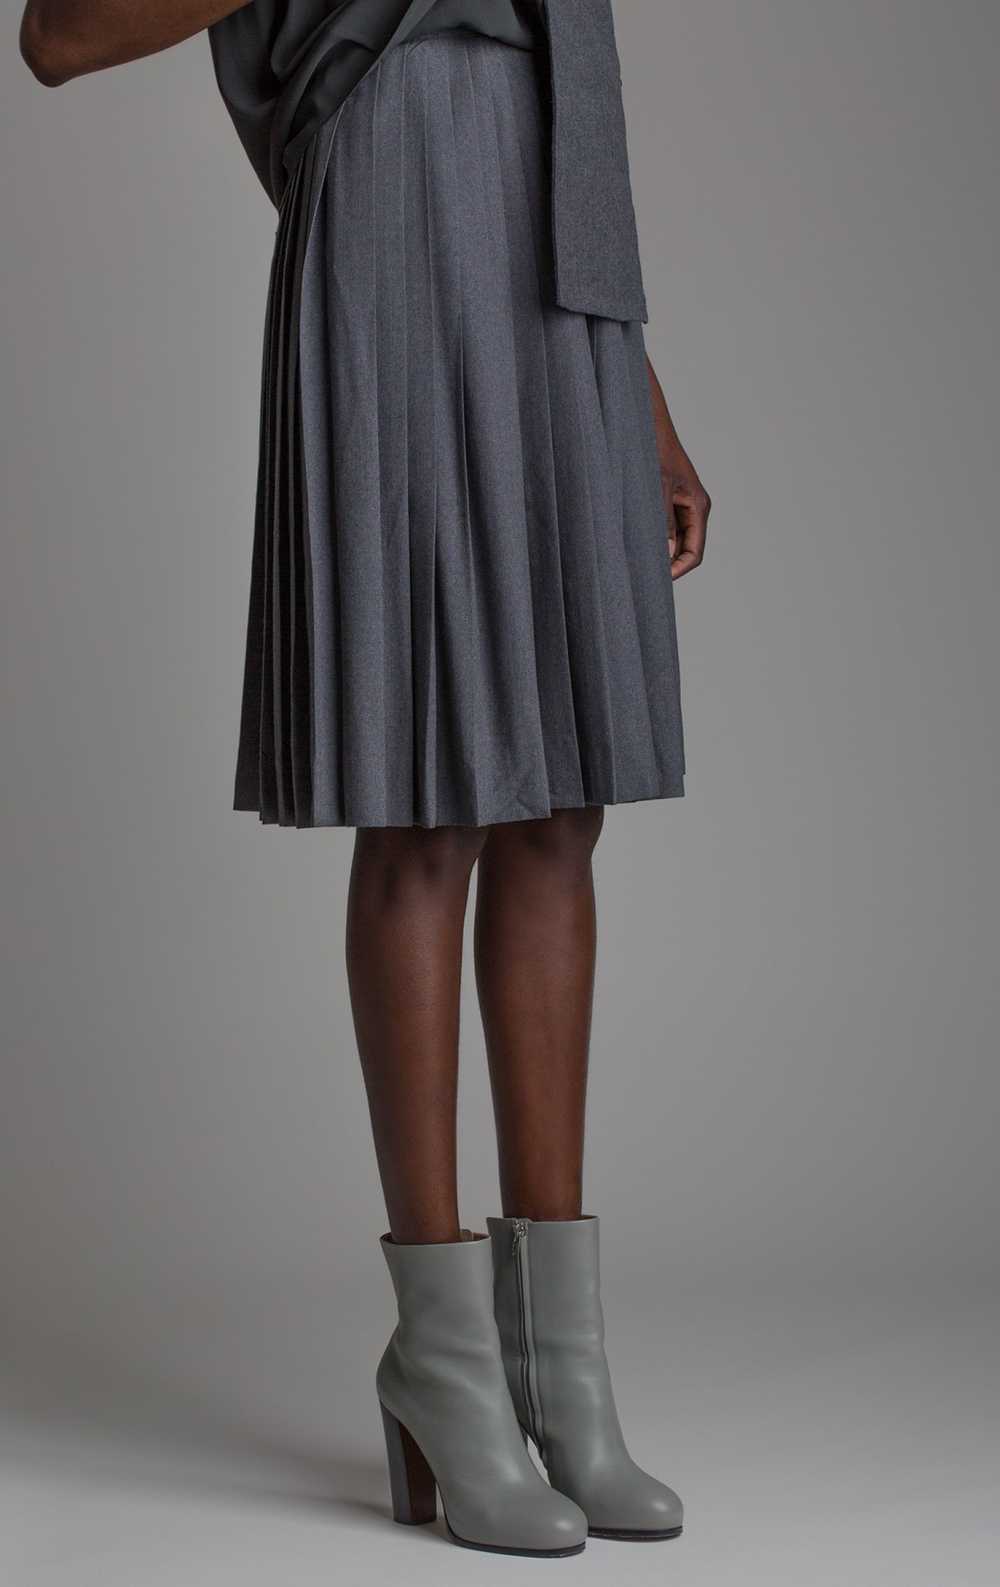 Vintage Pleated Wool Skirt - image 3